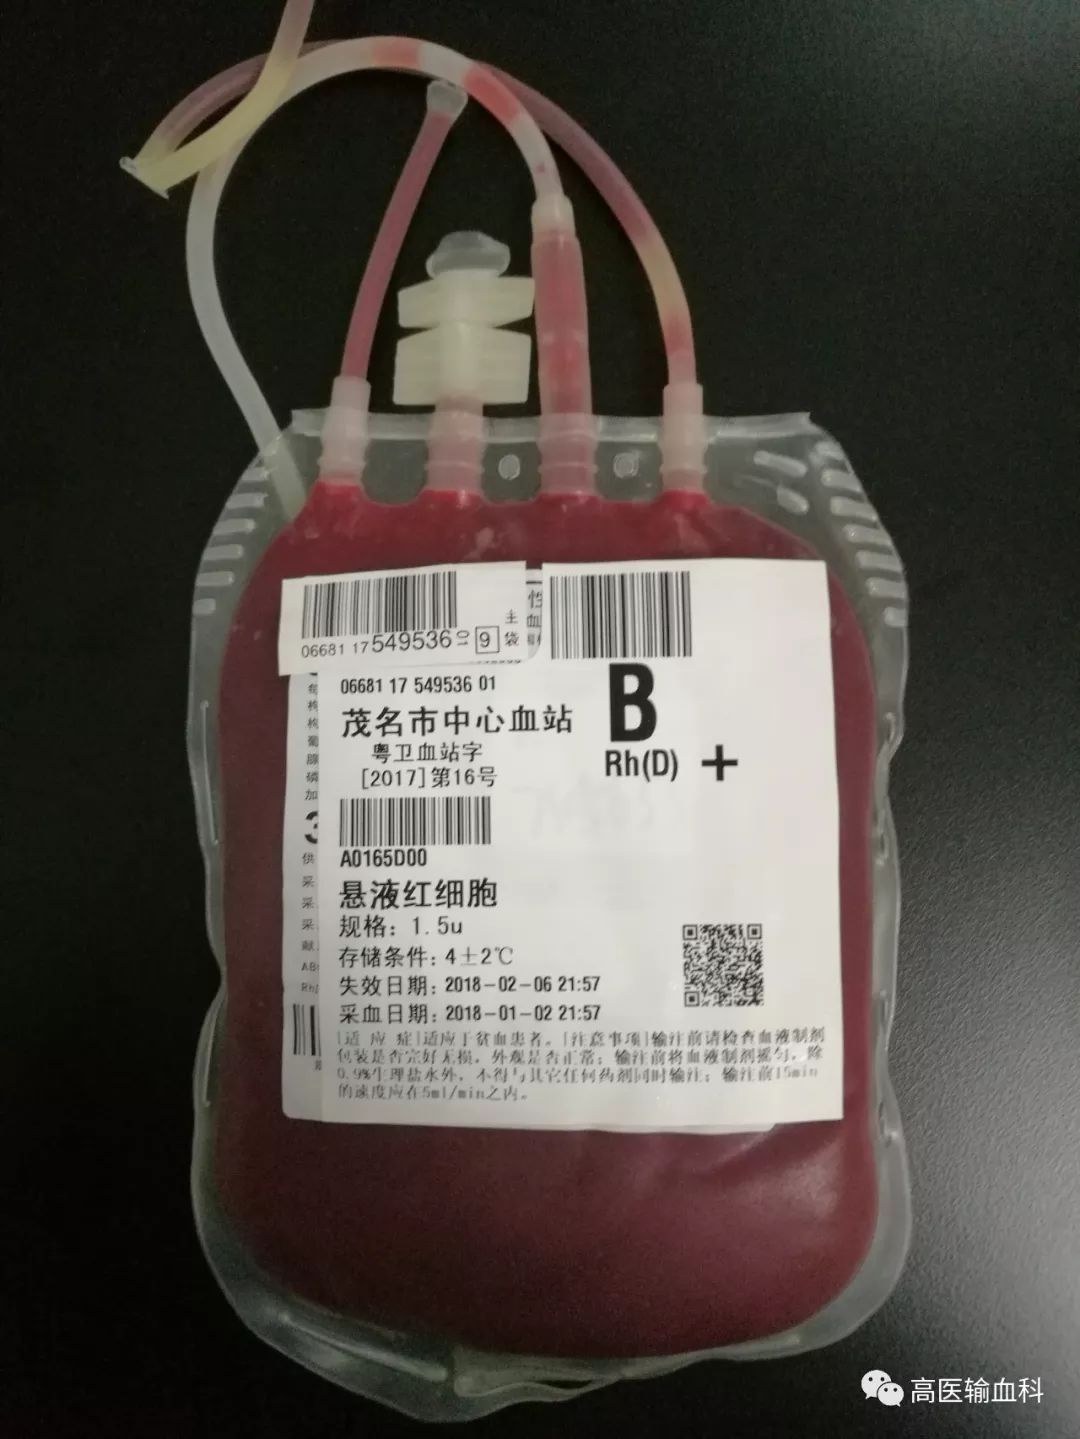 献完血后,工作人员会给每一袋采集到的血液都打上条形码,并录入电脑